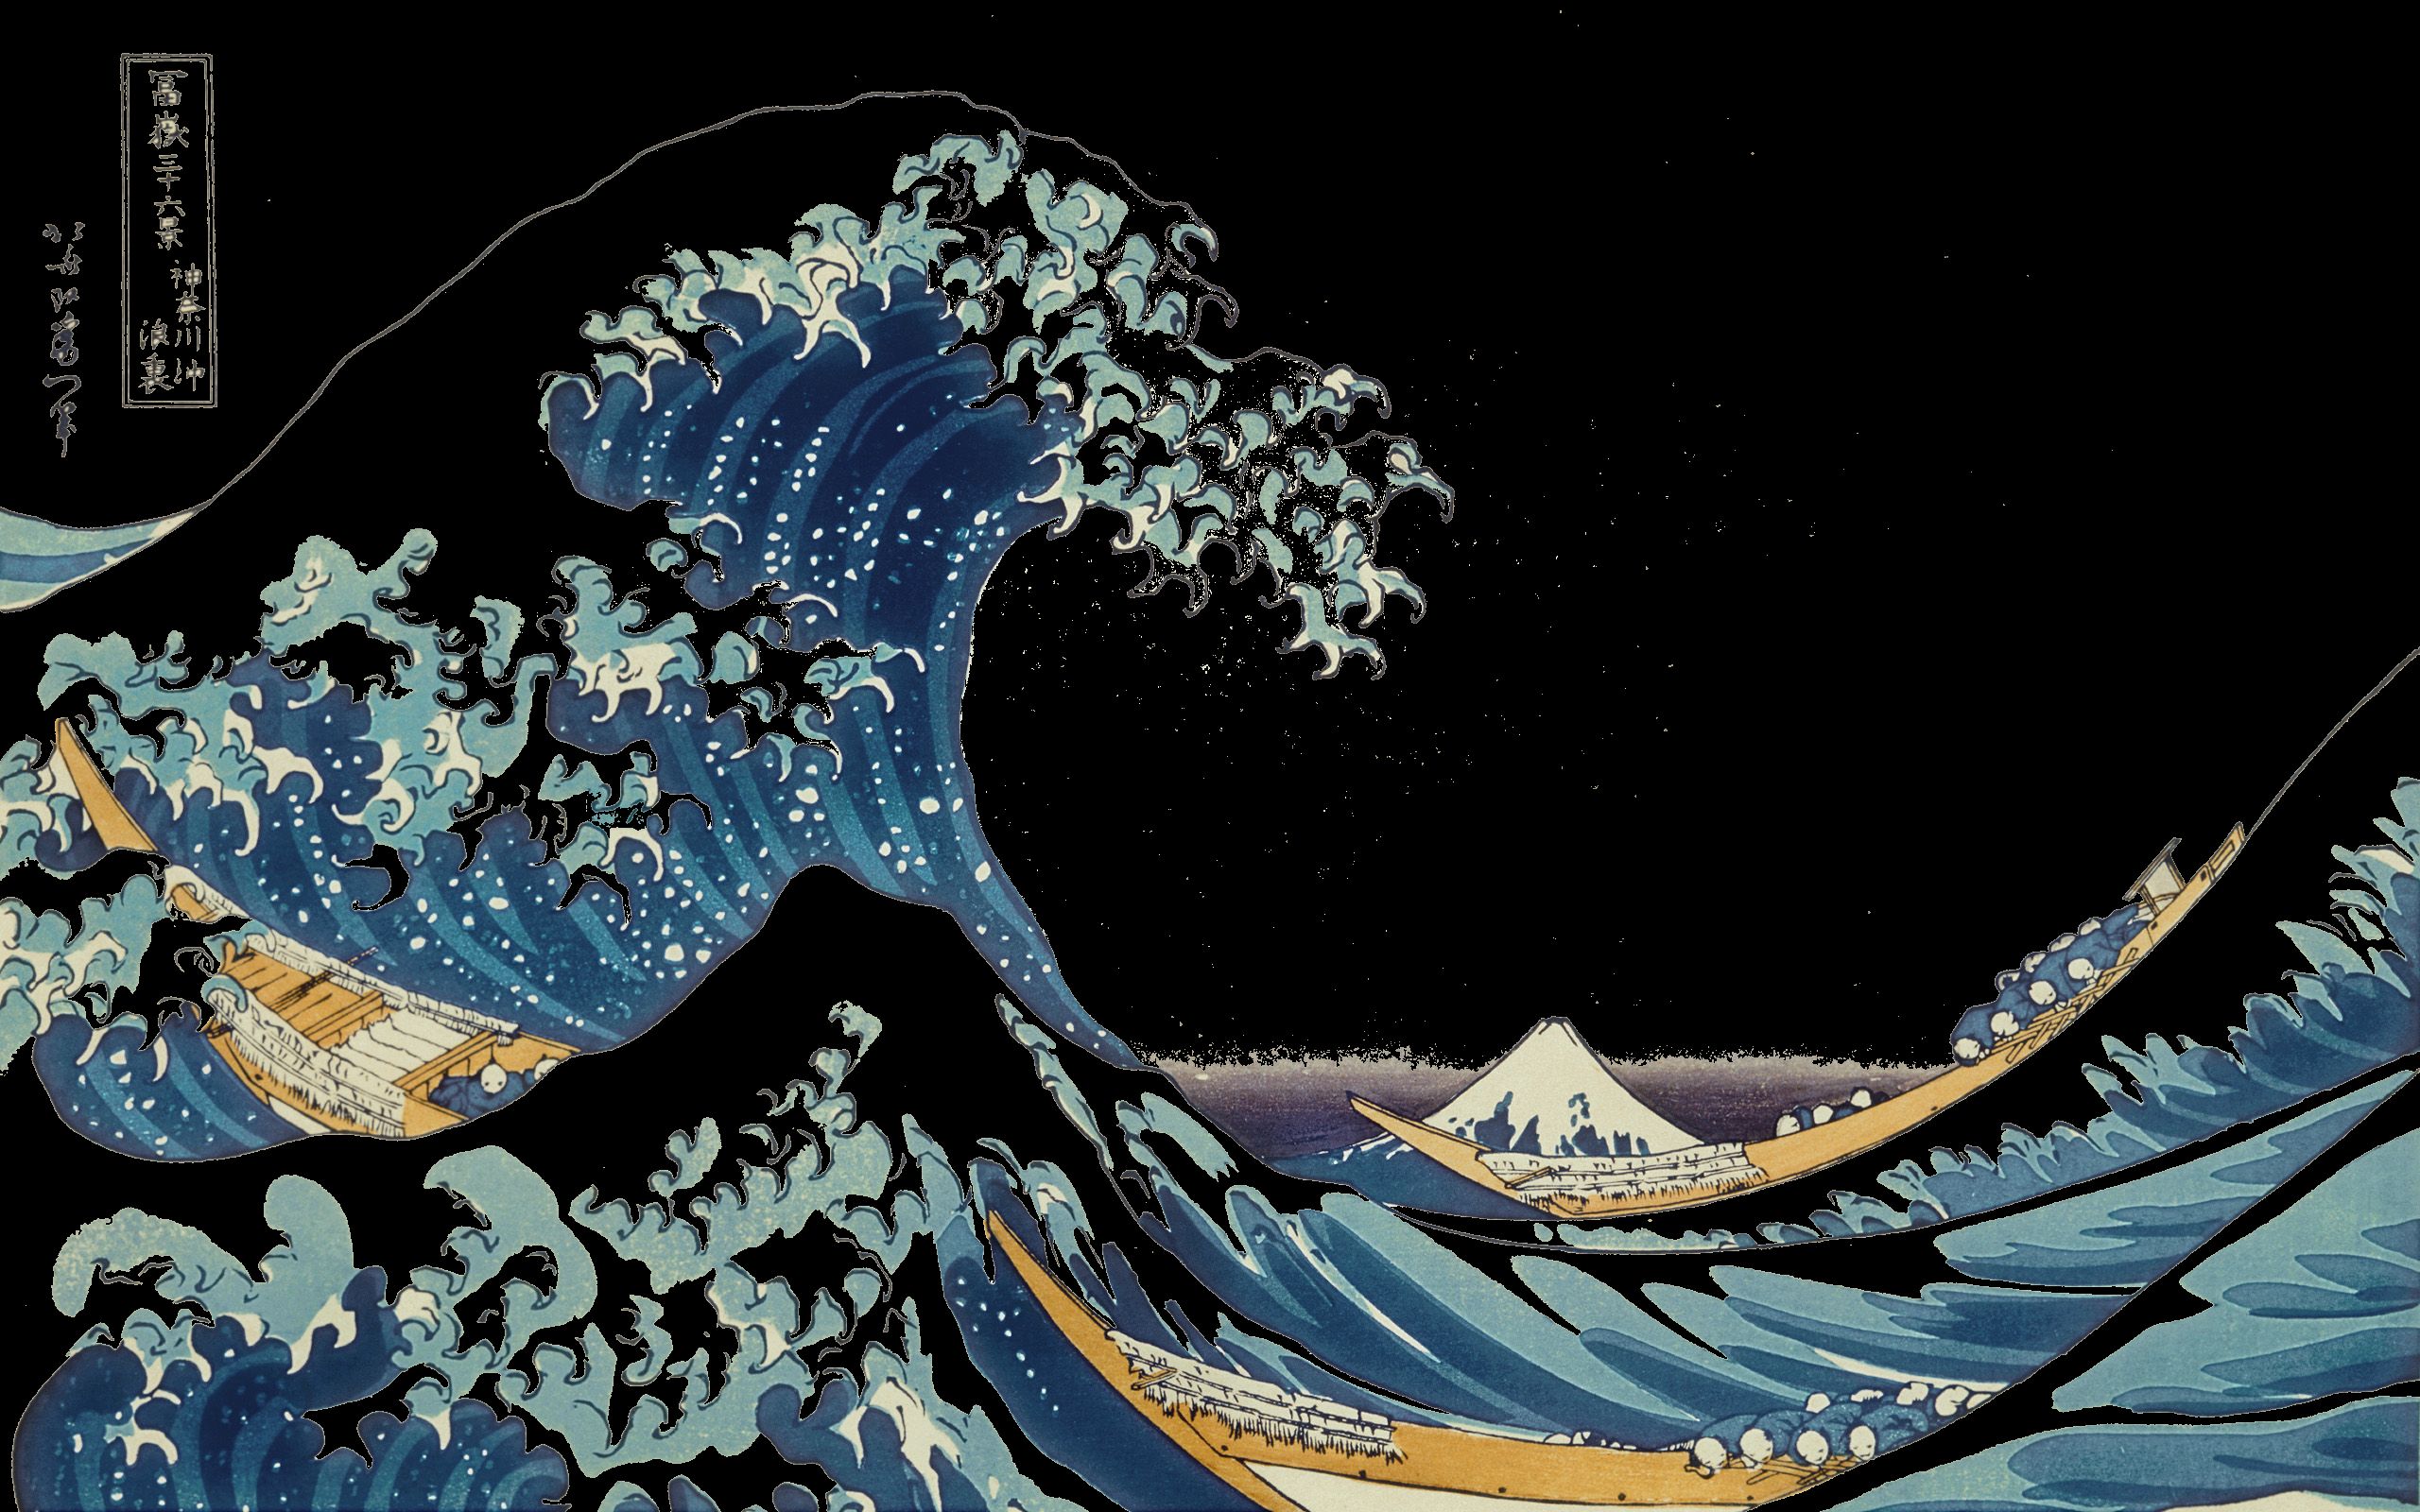 произведение искусства, перевернутый, Большая волна в Канагава - обои на рабочий стол